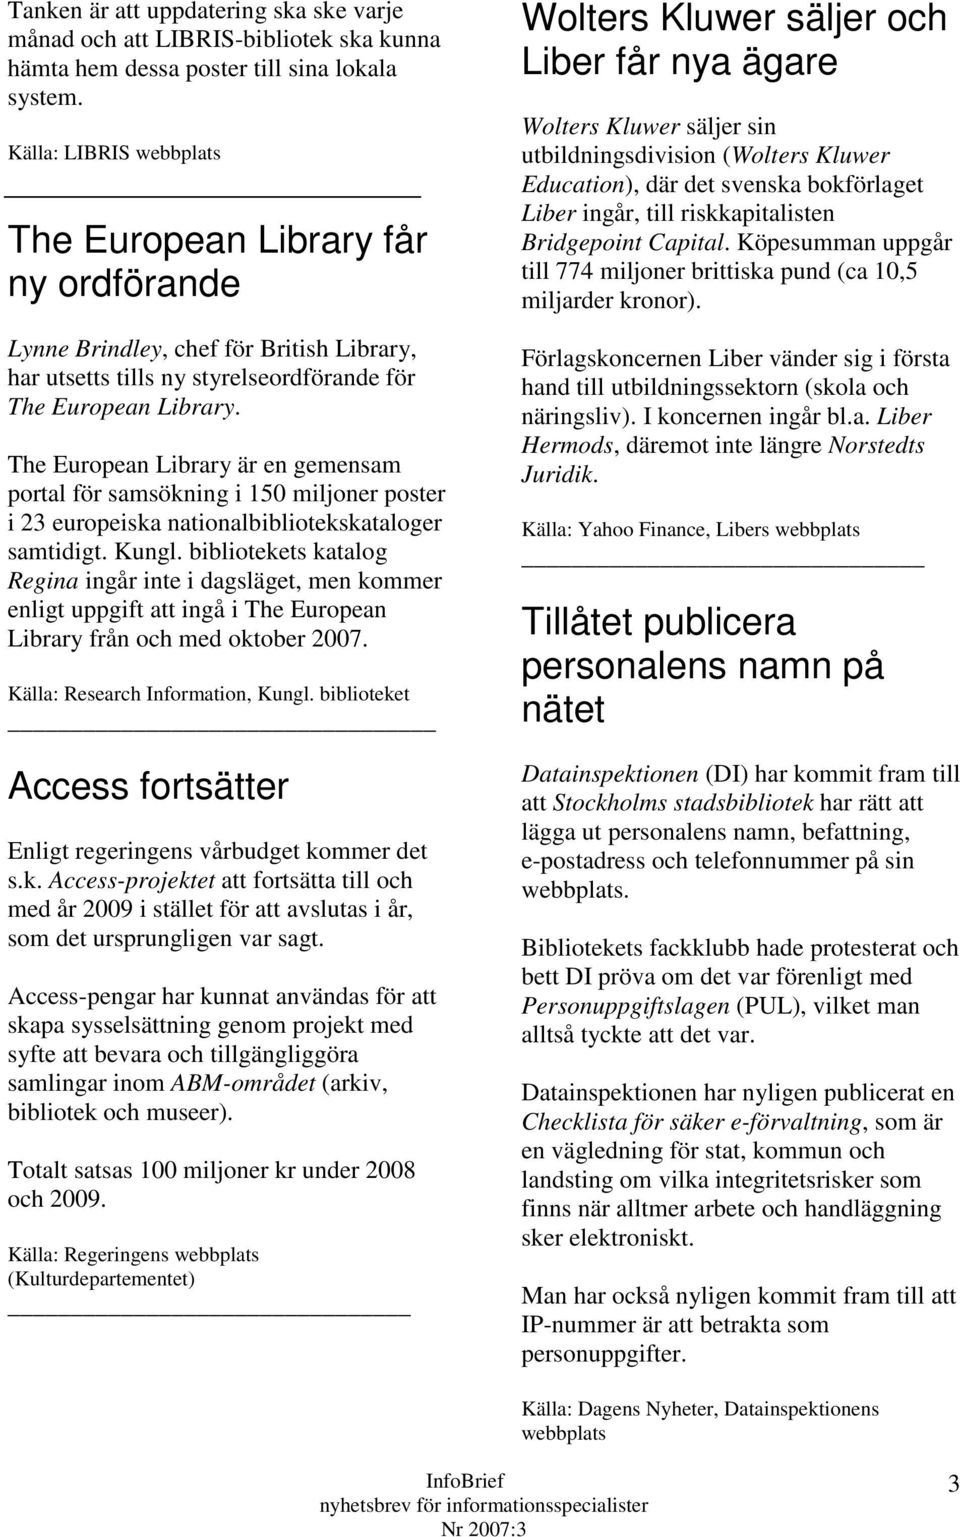 The European Library är en gemensam portal för samsökning i 150 miljoner poster i 23 europeiska nationalbibliotekskataloger samtidigt. Kungl.